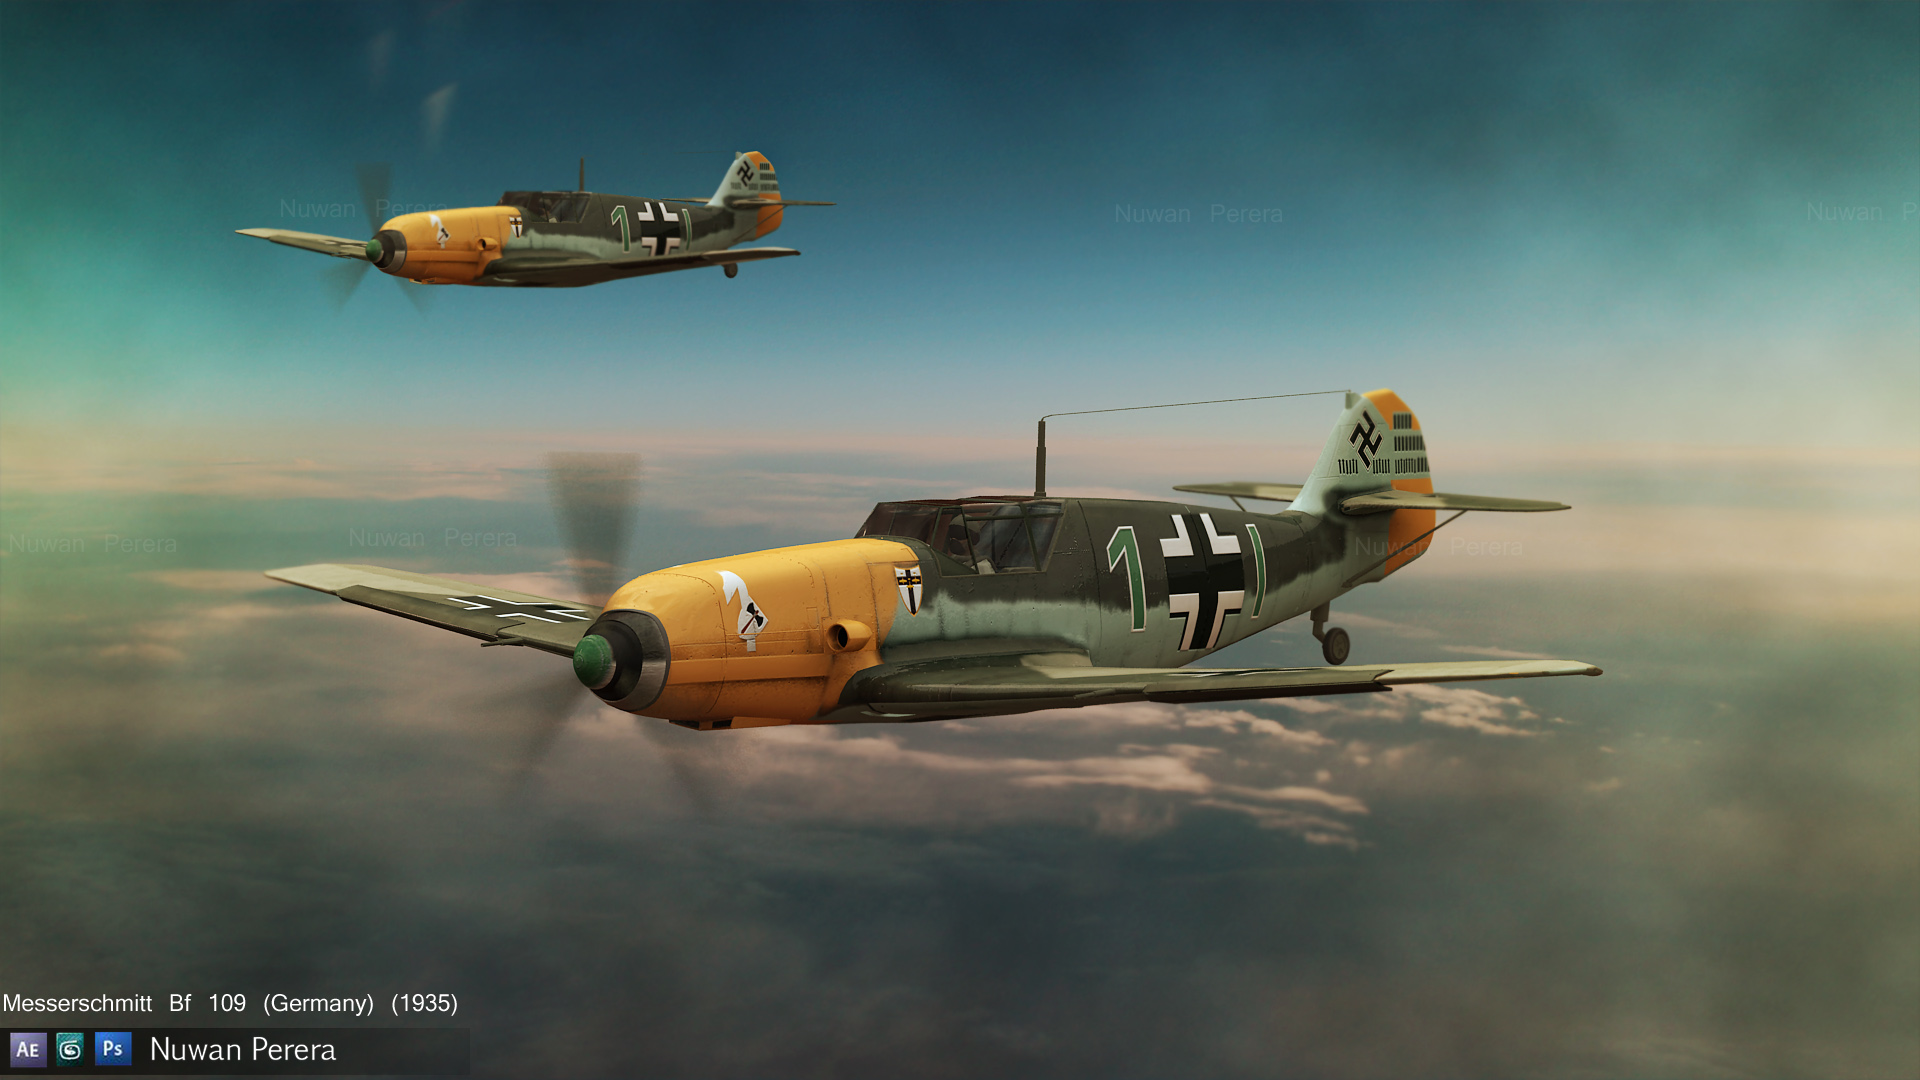 1920x1080 > Messerschmitt Bf 109 Wallpapers